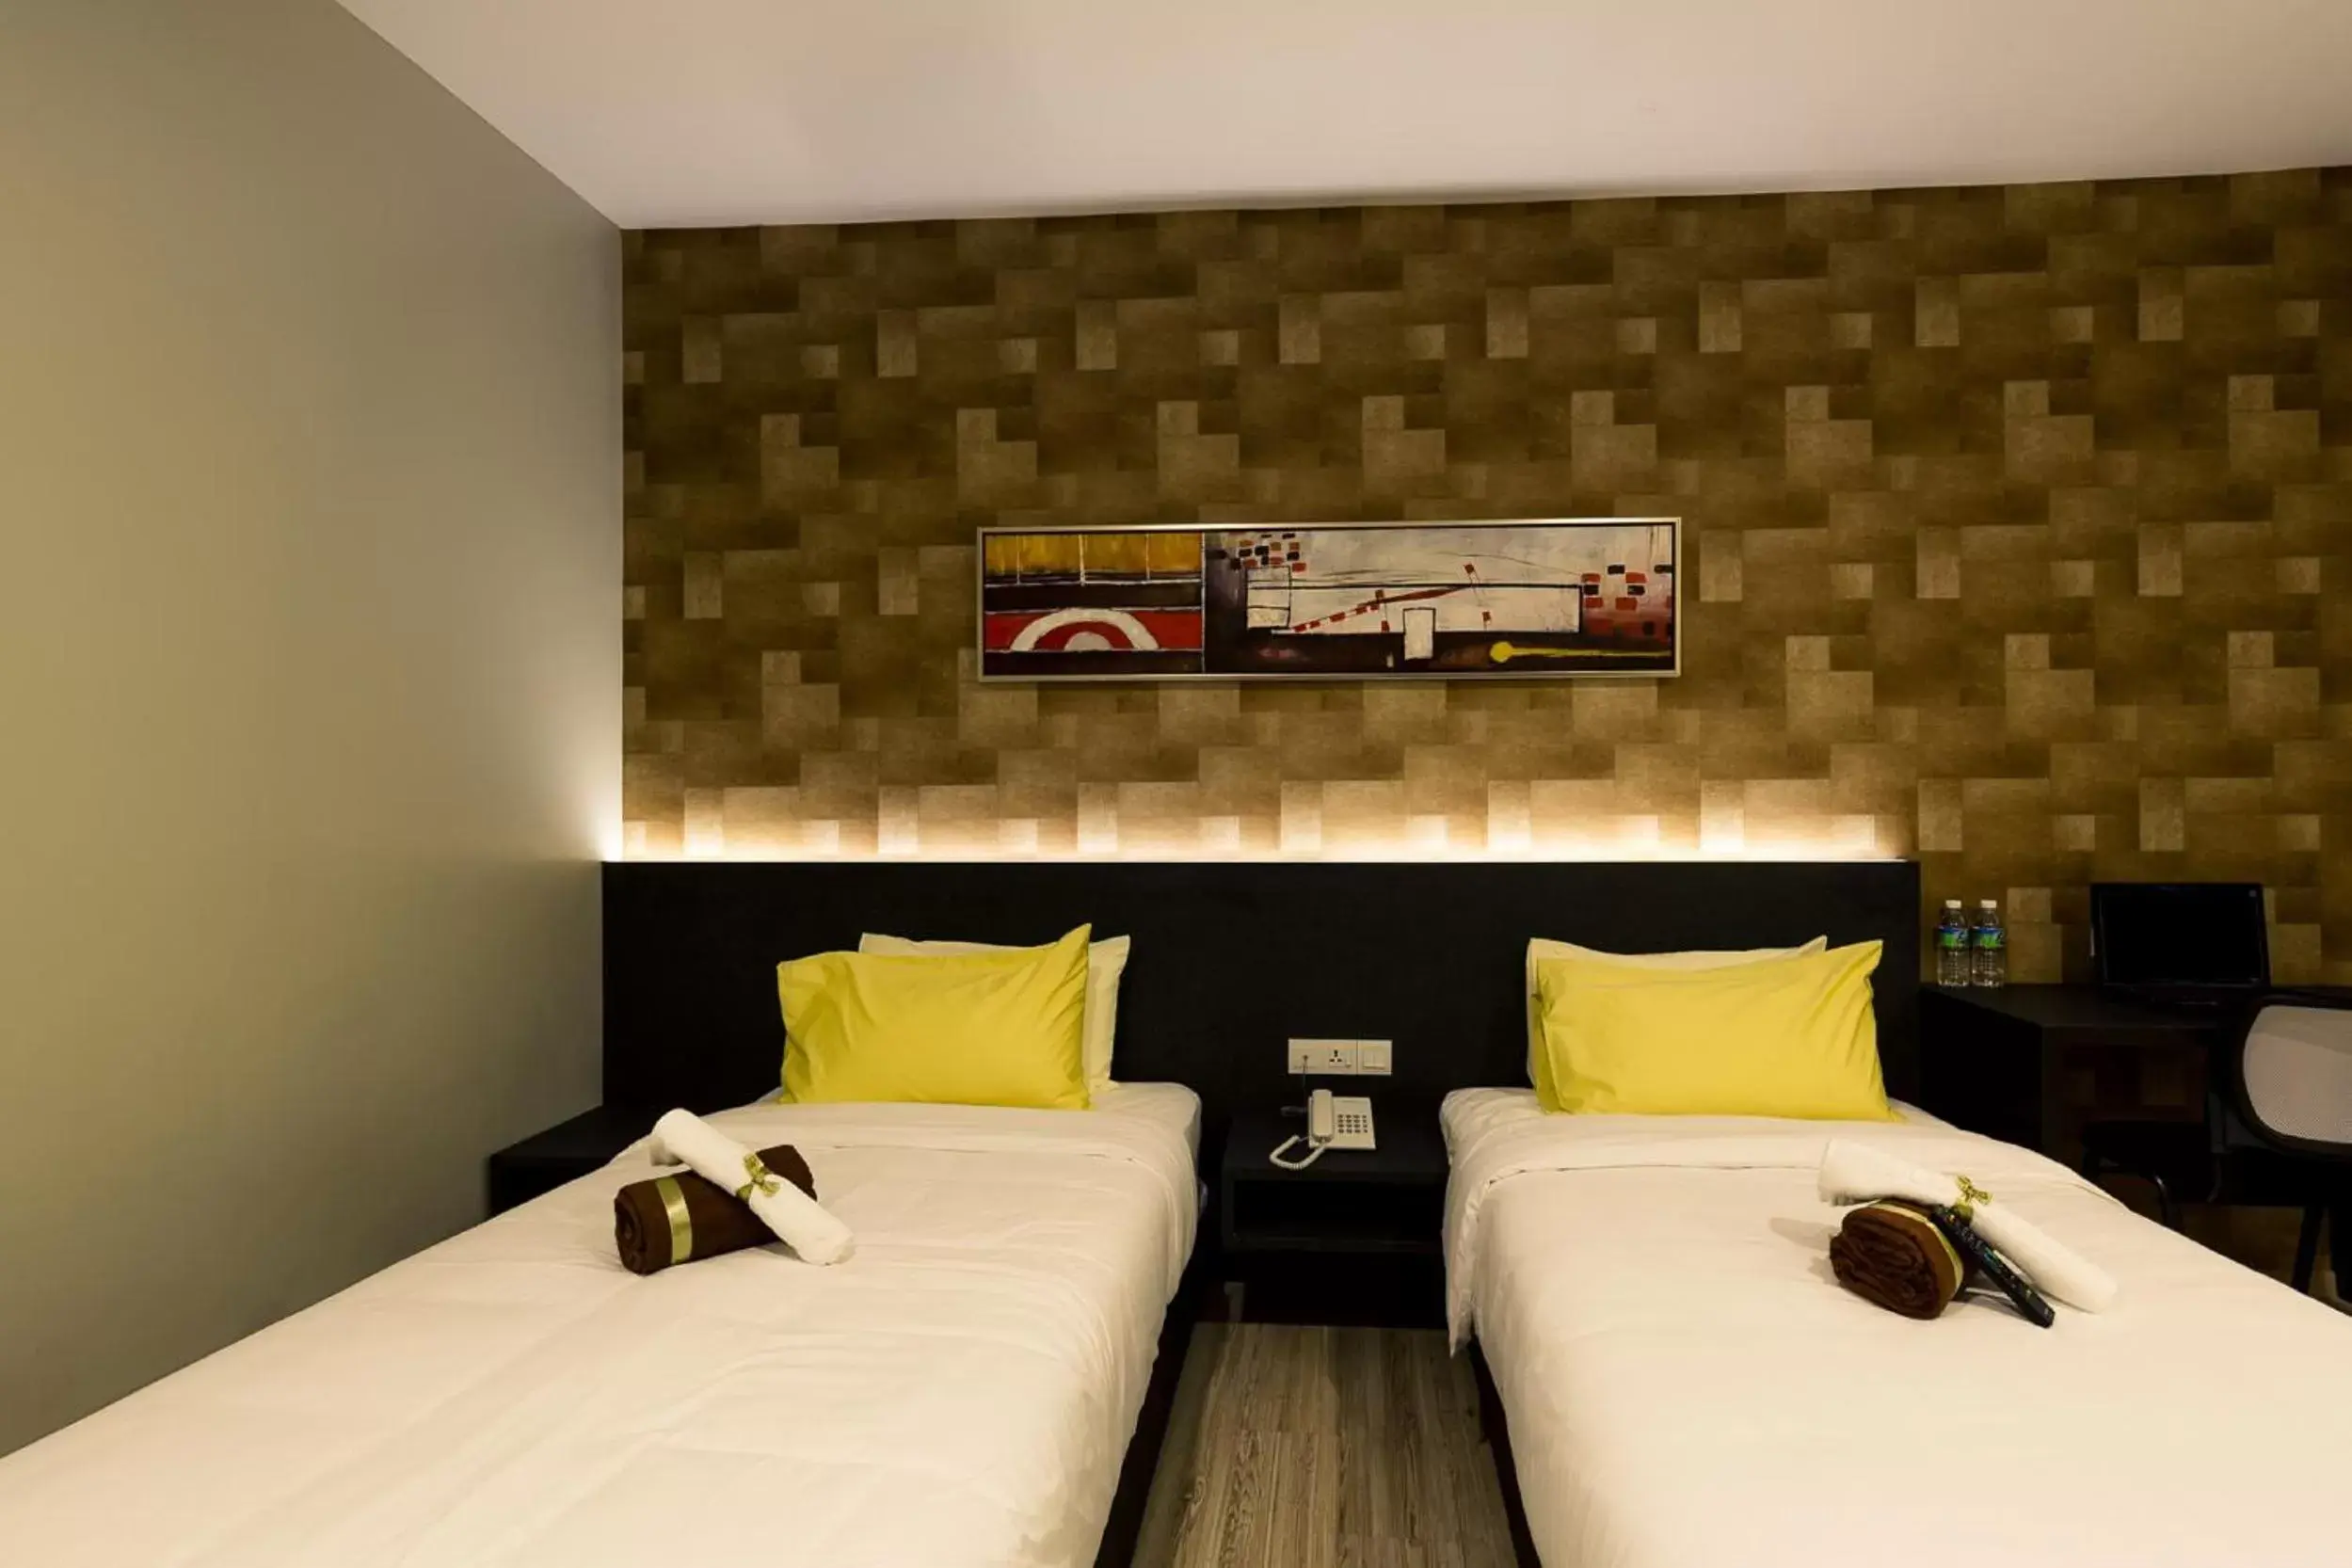 Bed, Room Photo in Golden Roof Hotel Sunway Ipoh